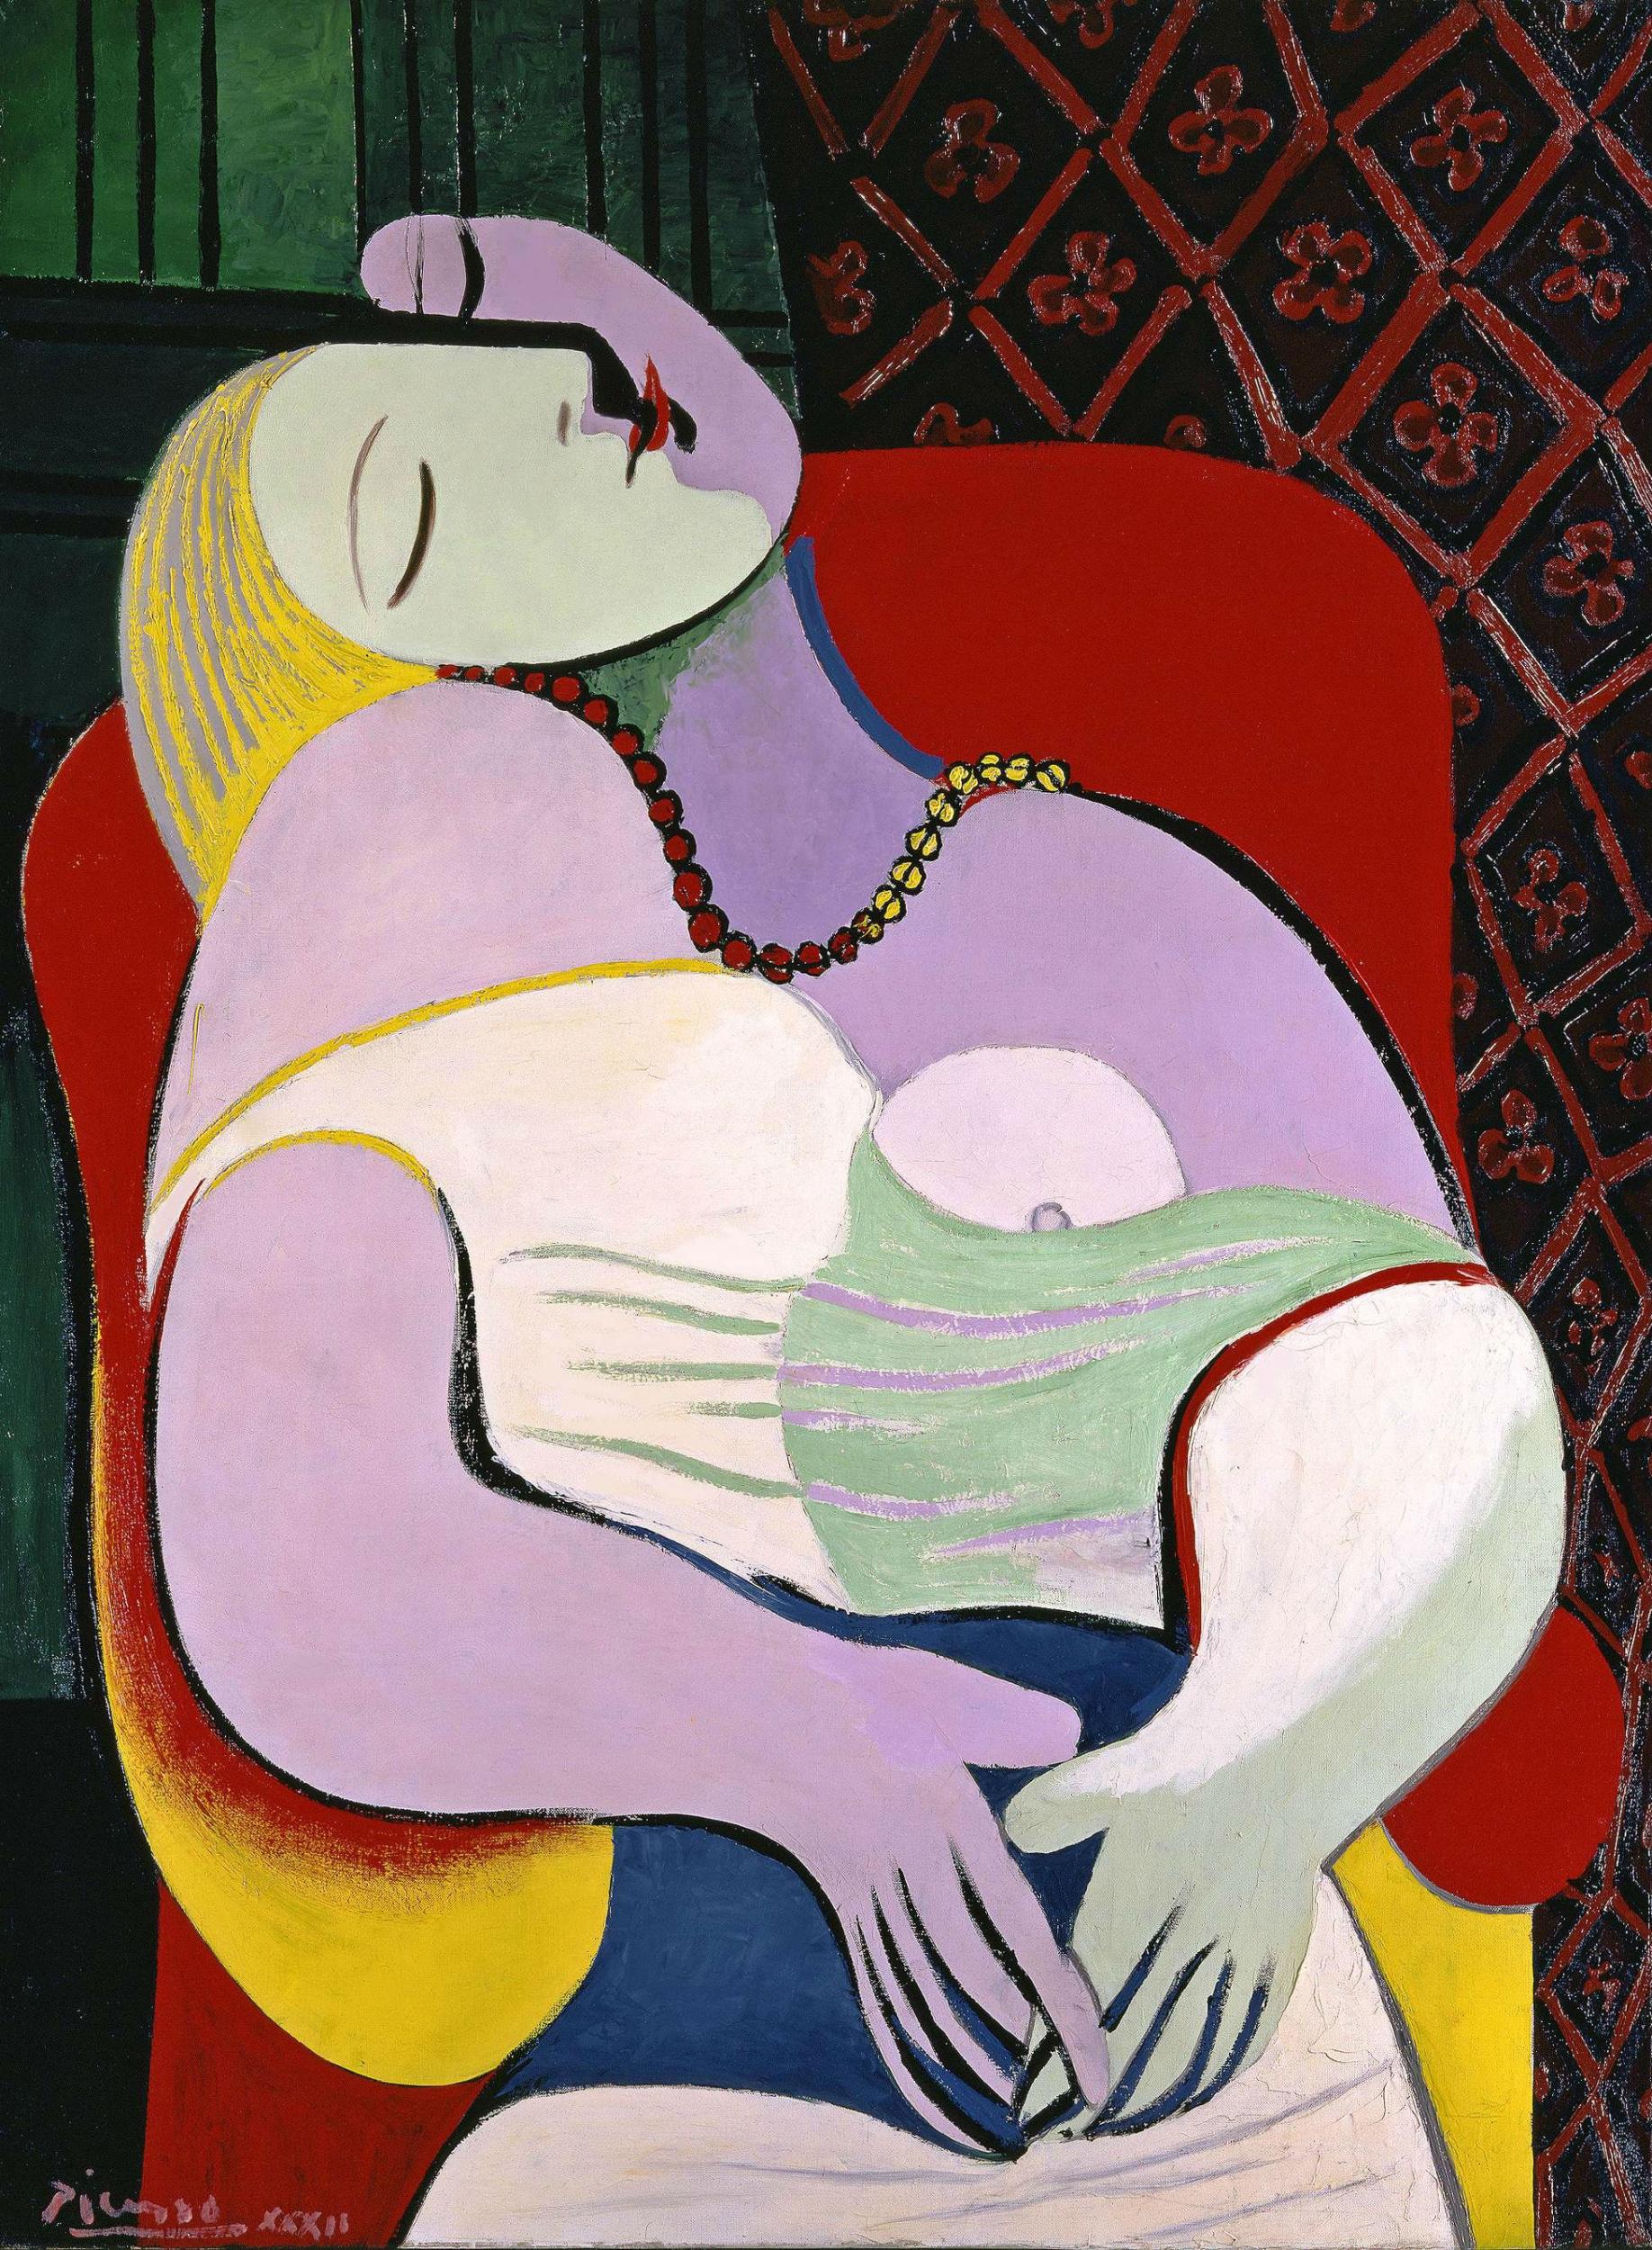 Pablo Picasso ‘The Dream’ (Le Rêve), 1932, private collection (Succession Picasso/DACS)